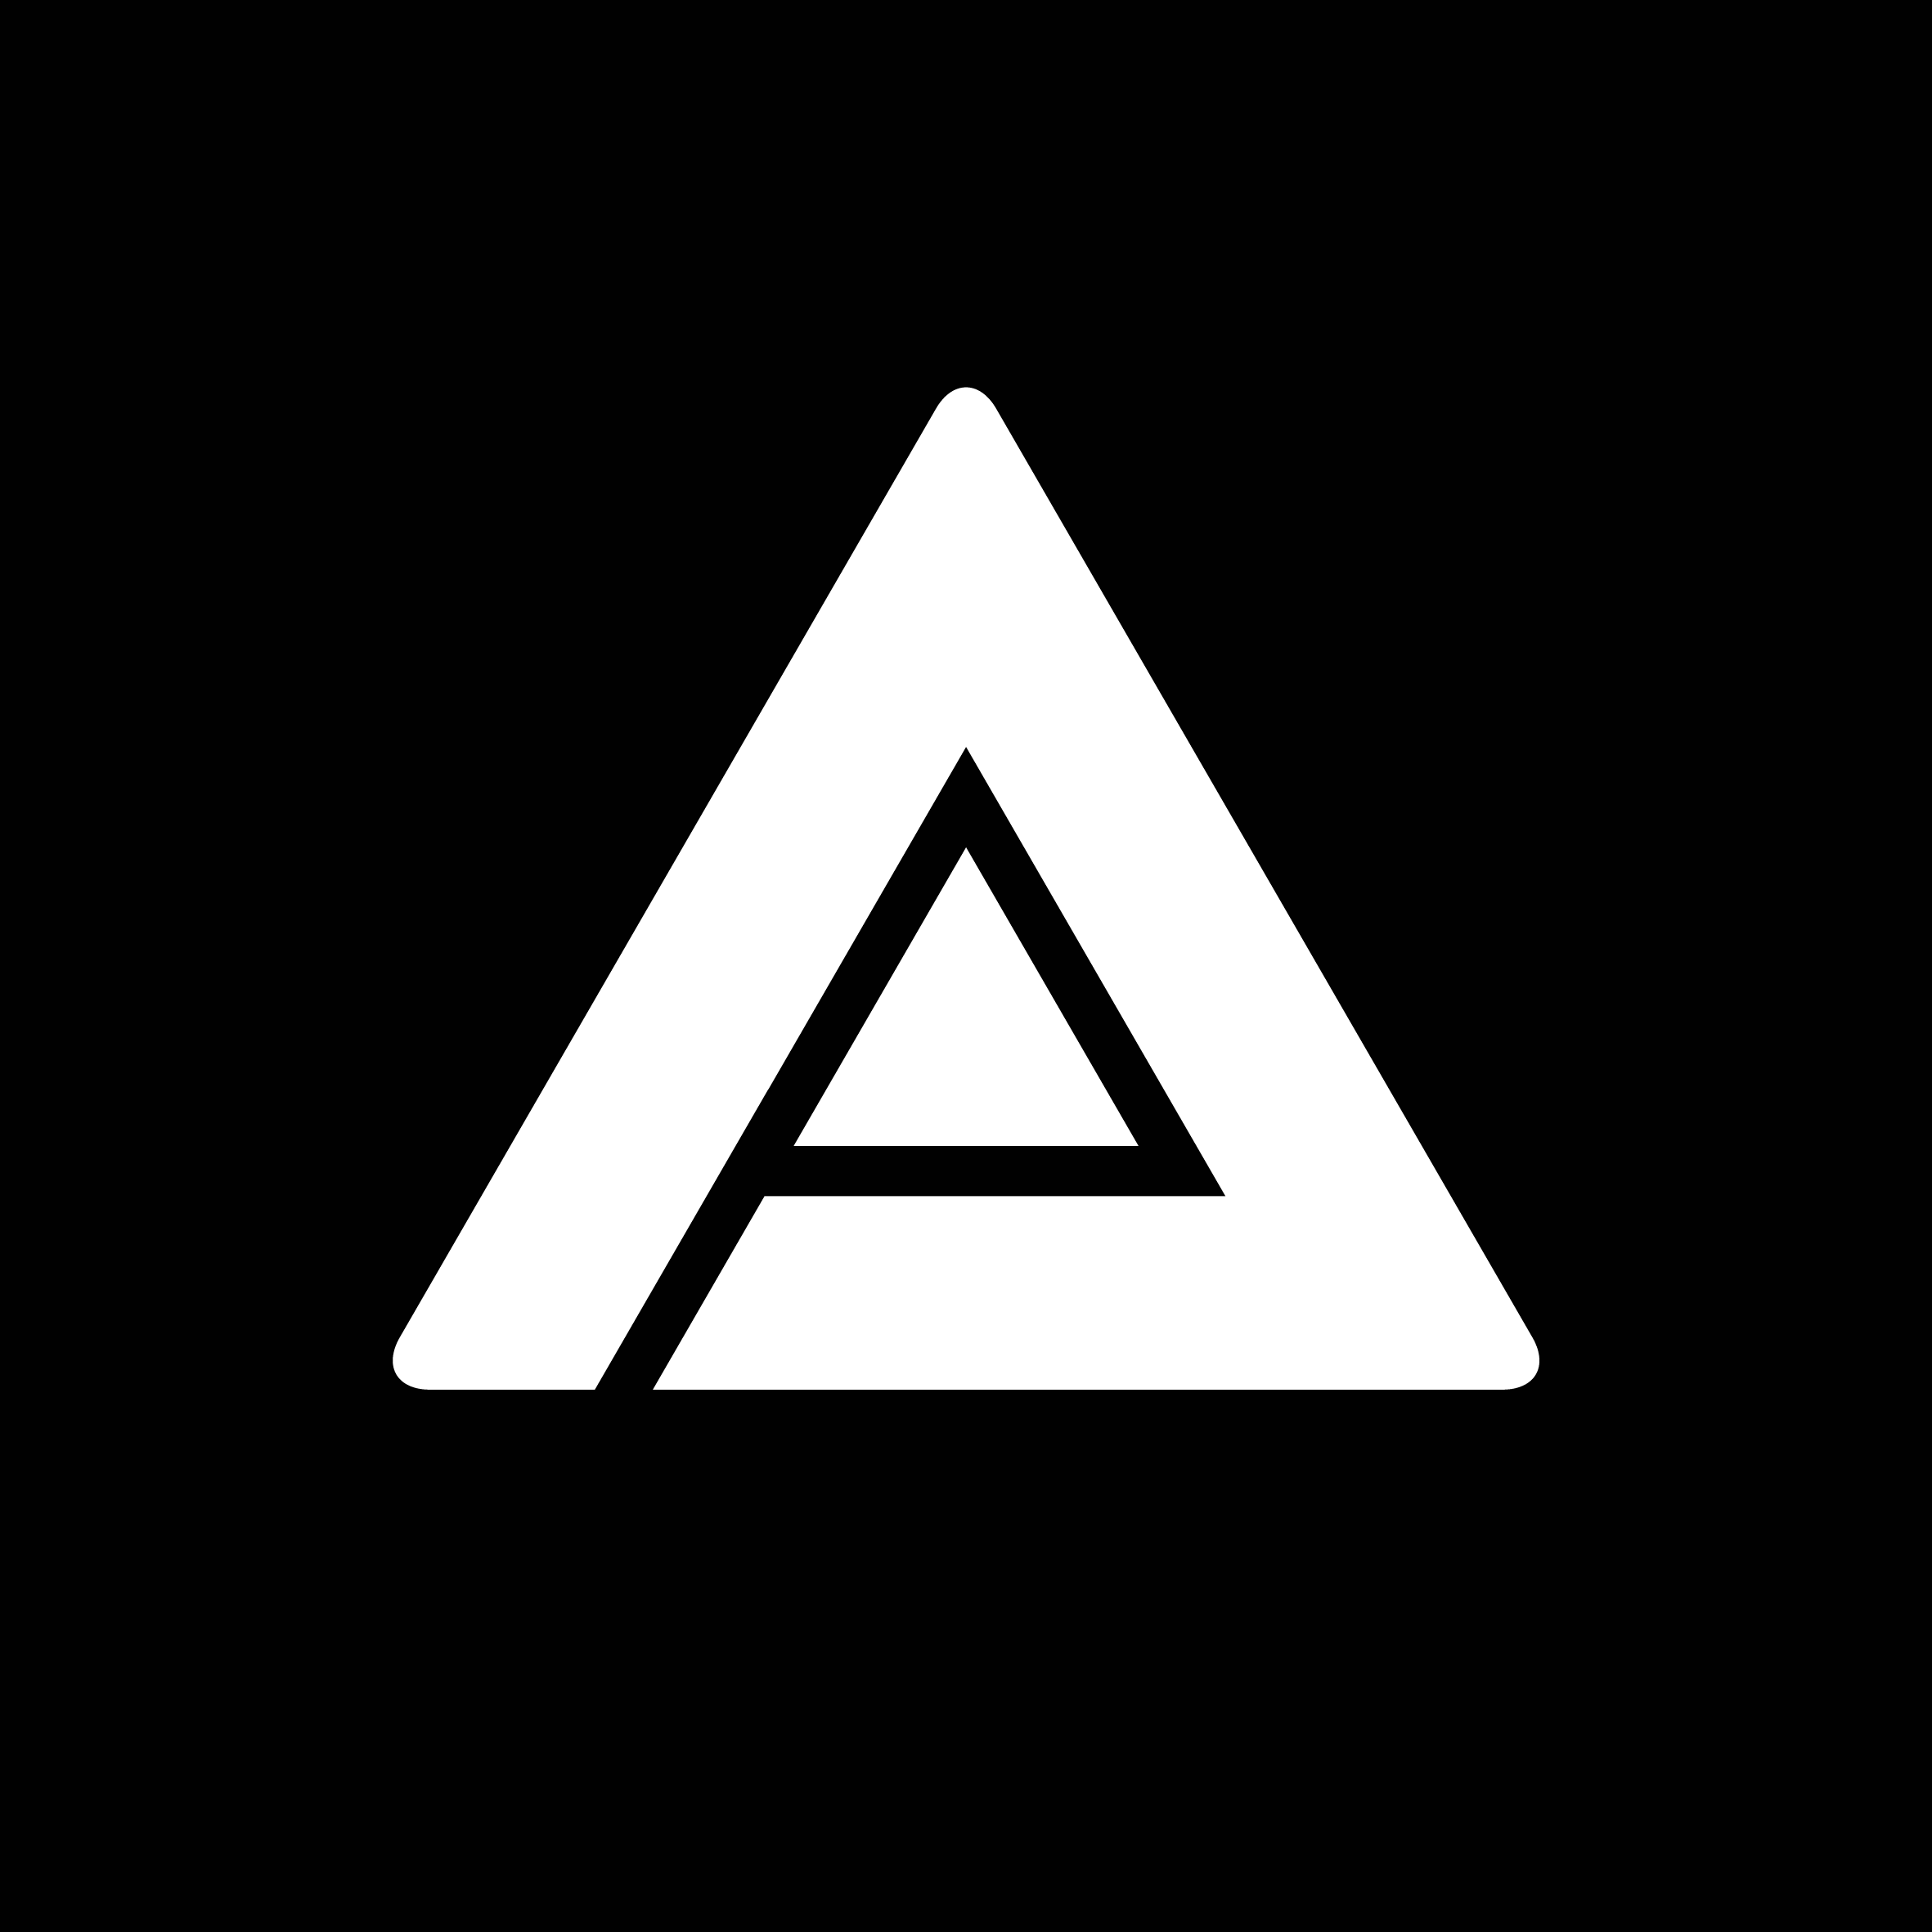 Prizm Logo - Prizm / Update your Prizm · GitLab